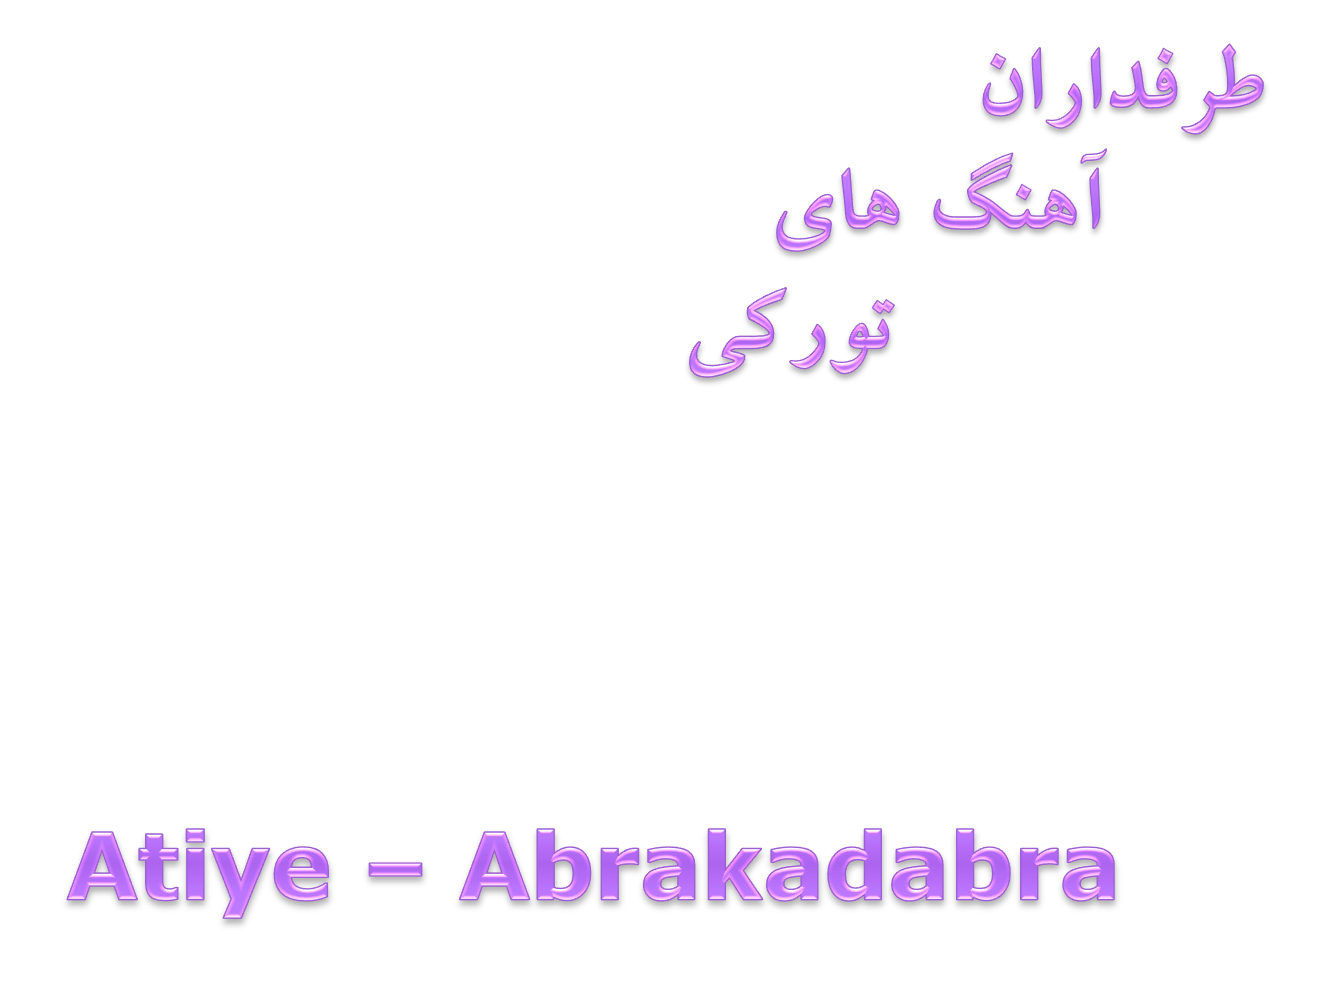 دانلود آهنگ بسیار زیبا از Atiye بنام Abrakadabra